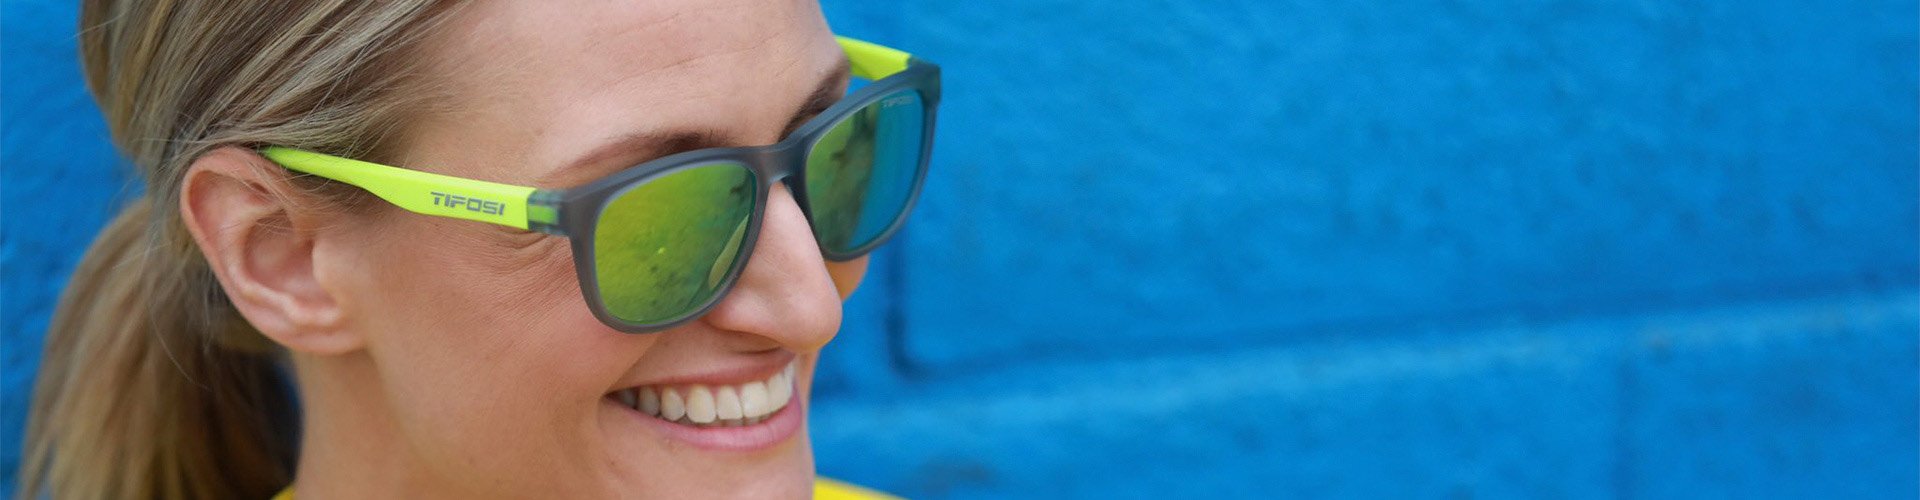 Woman wearing lime green Tifosi sunglasses